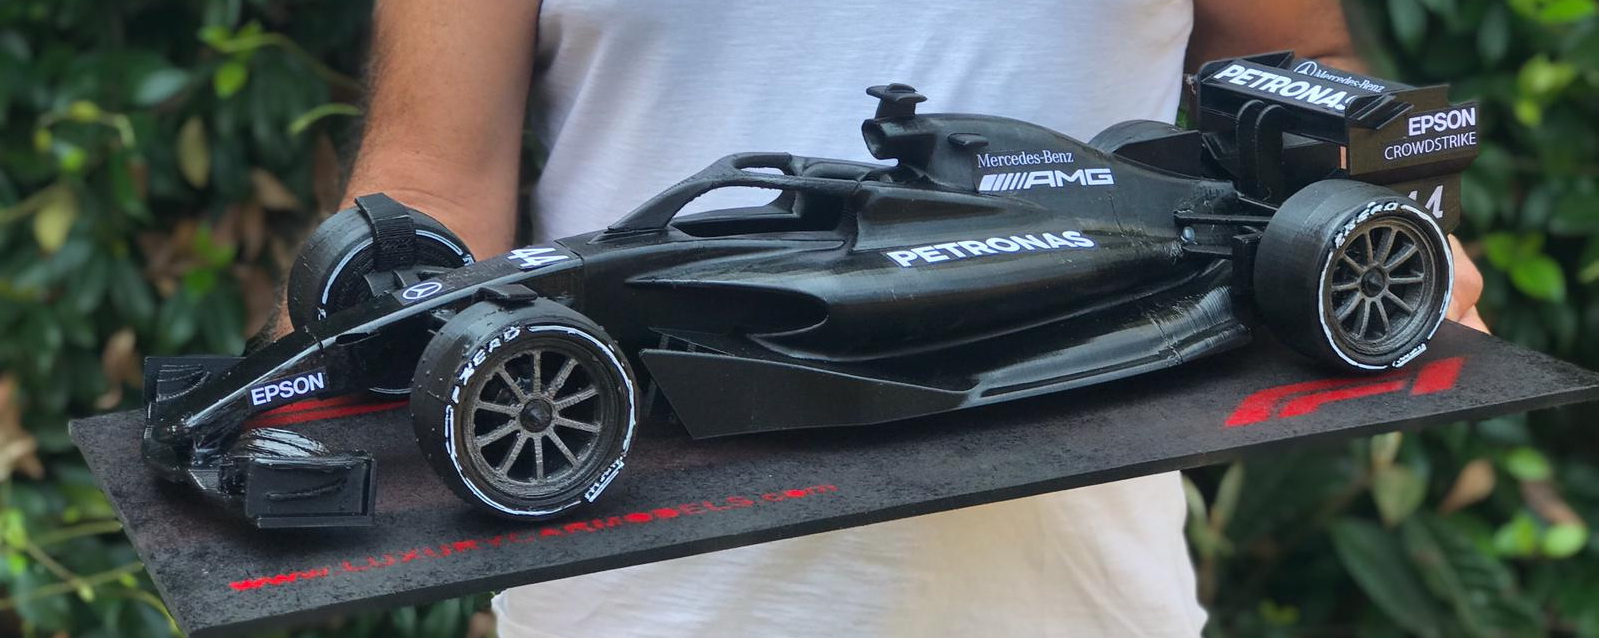 Hamilton AMG - Formula 1 2021-22 Prototype no.1B